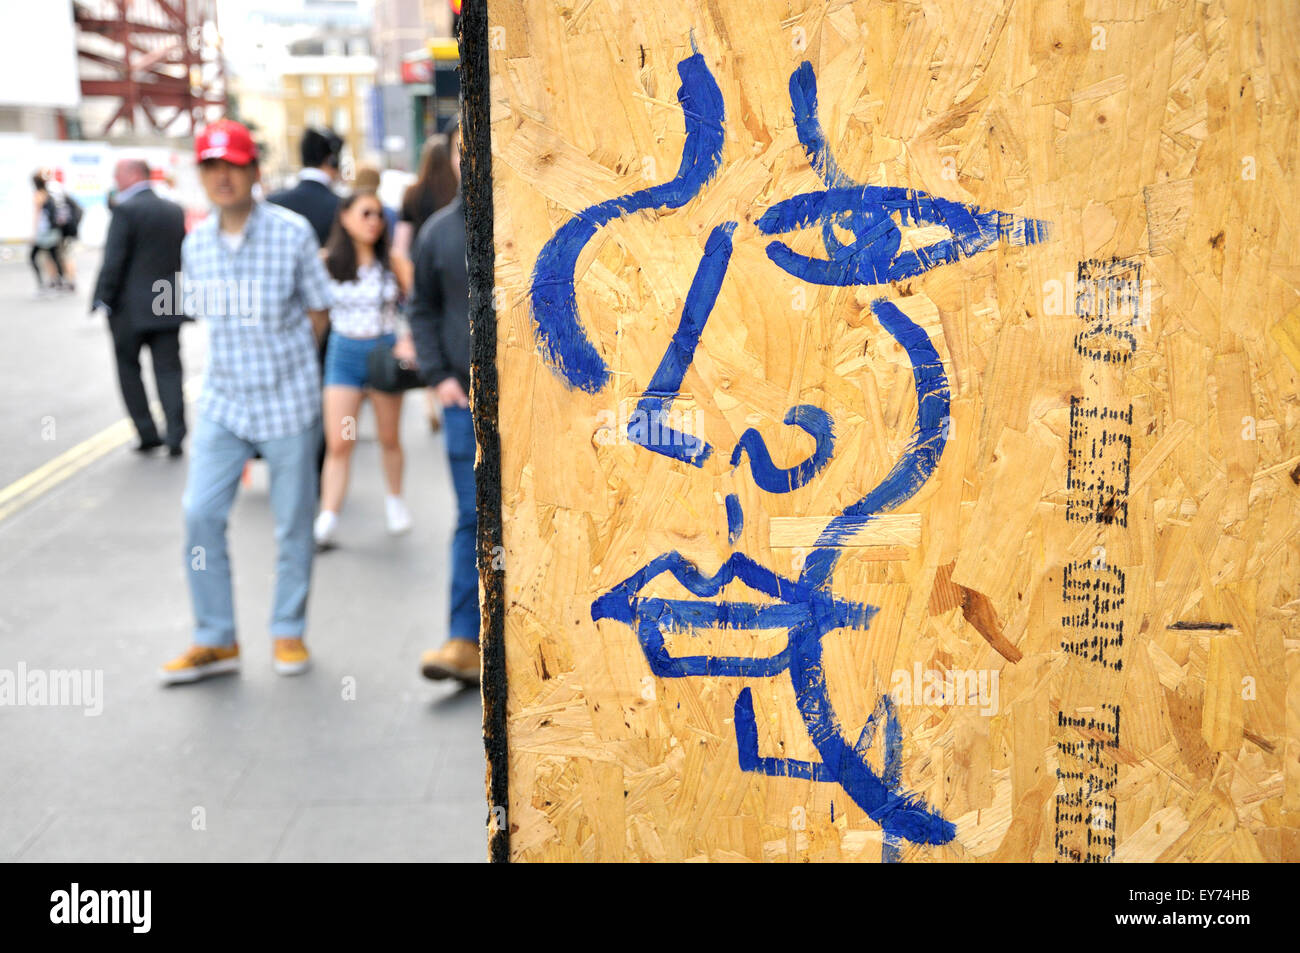 Londres, Angleterre, Royaume-Uni. Picasso-style graffiti sur une période temporaire des passants dans le quartier chinois Banque D'Images